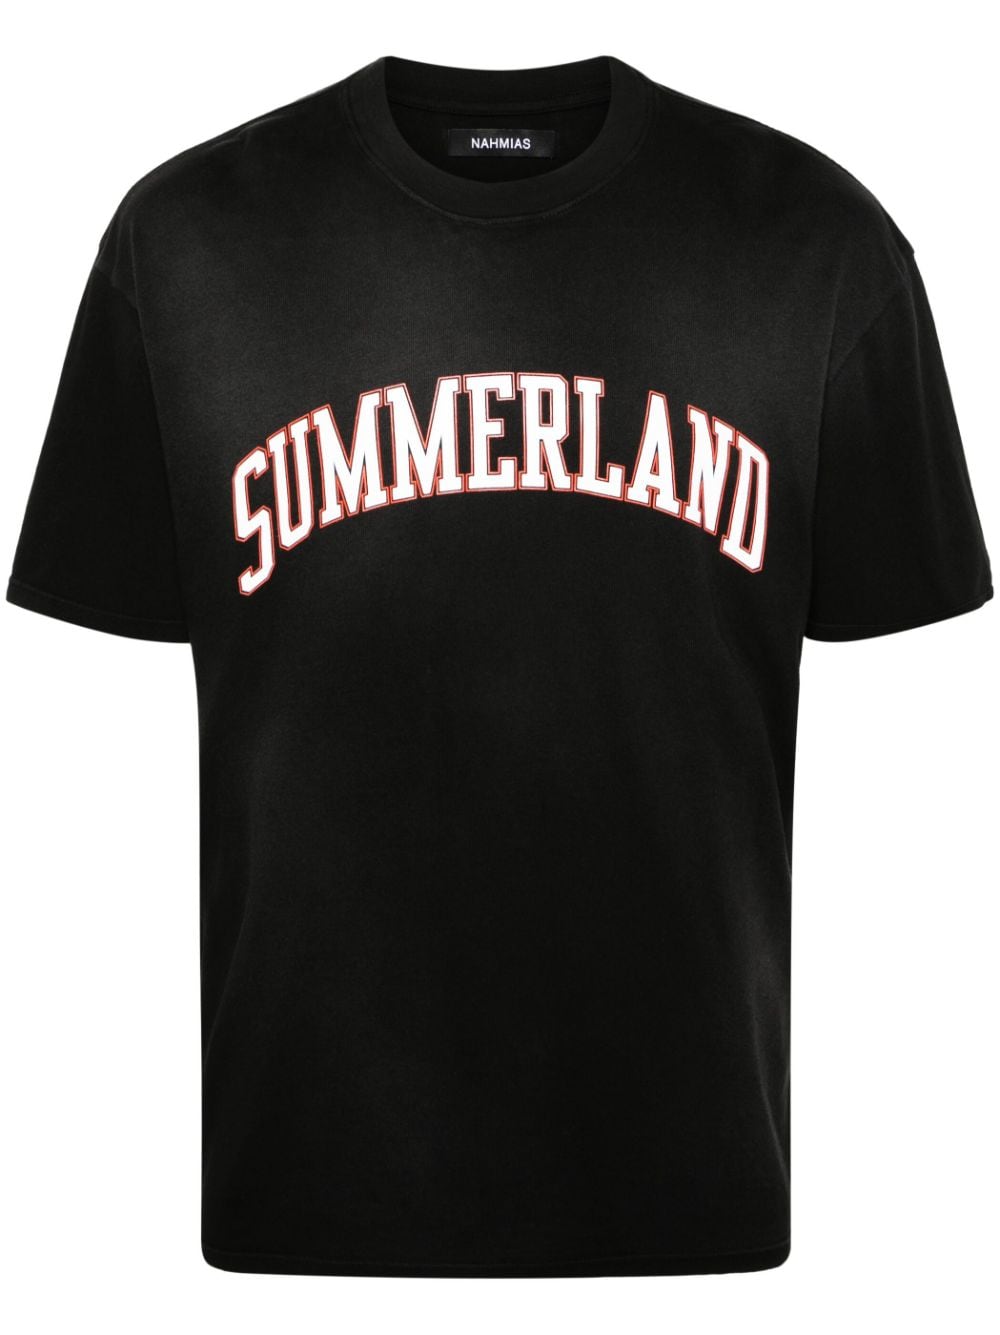 Nahmias Summerland Collegiate cotton T-shirt - Black von Nahmias